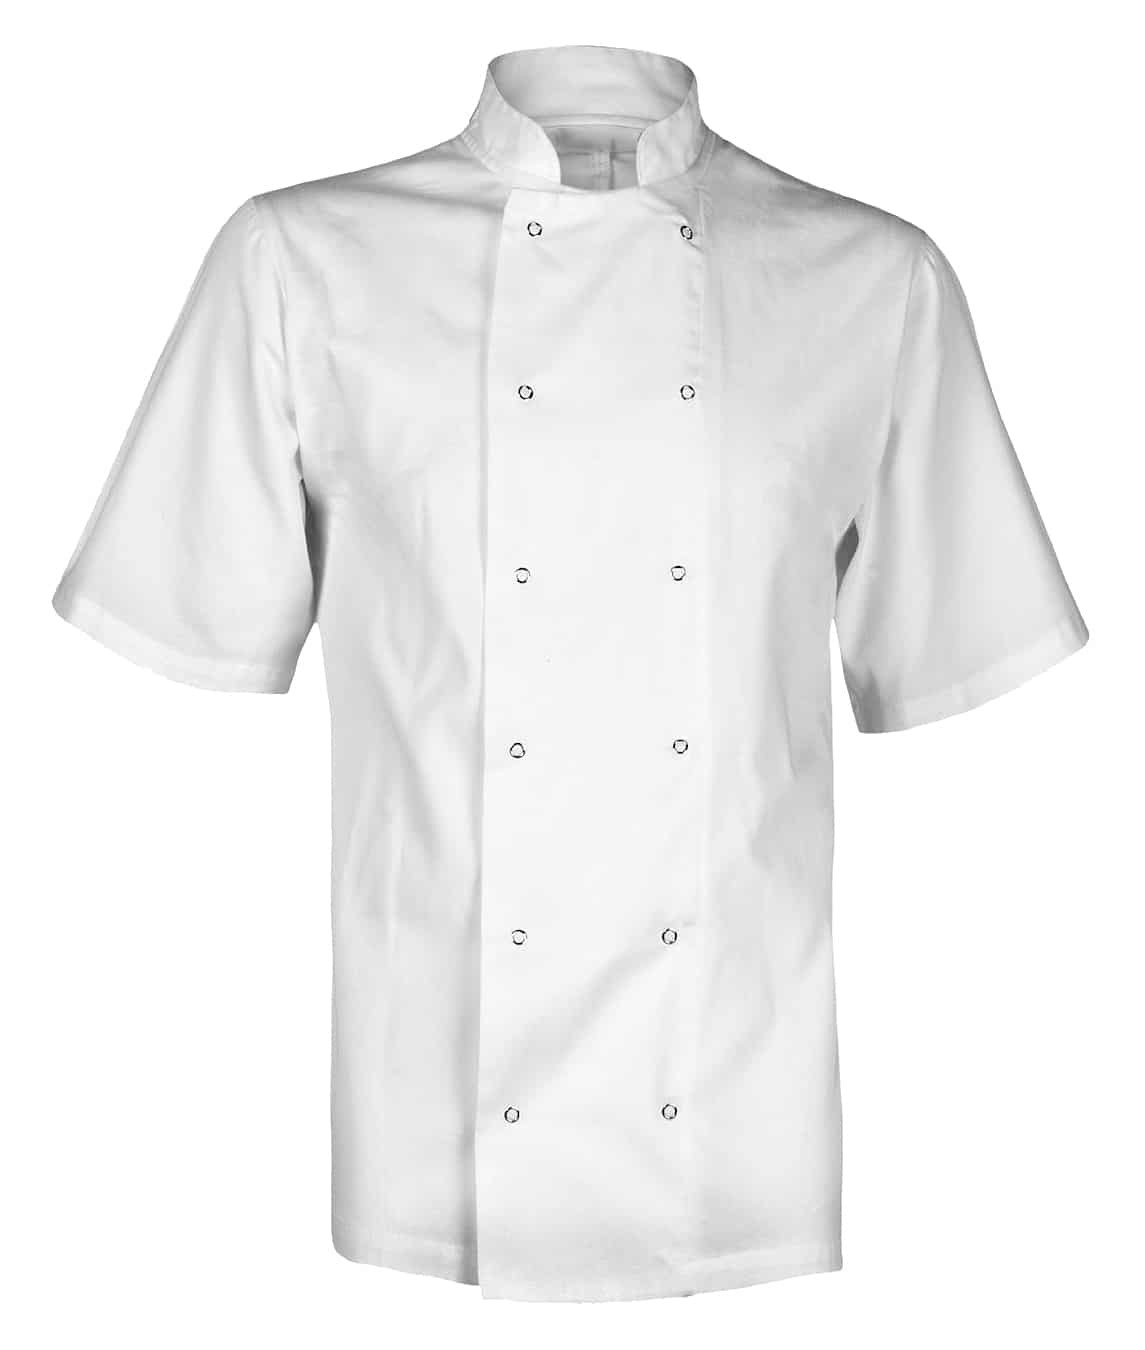 Chef's Jacket: Unisex Short Sleeve